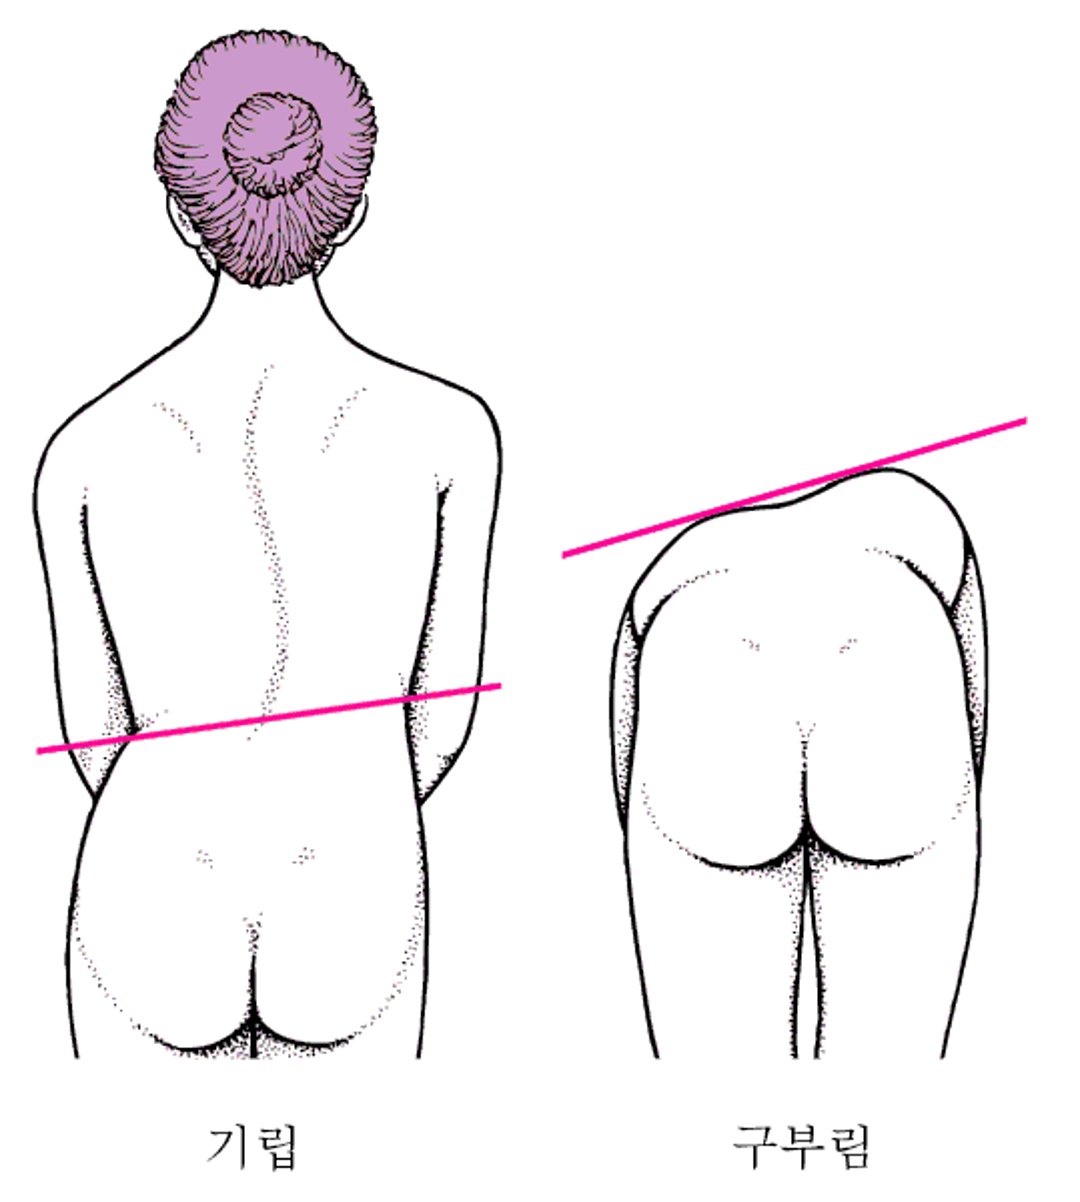 척추측만증: 굽은 척추